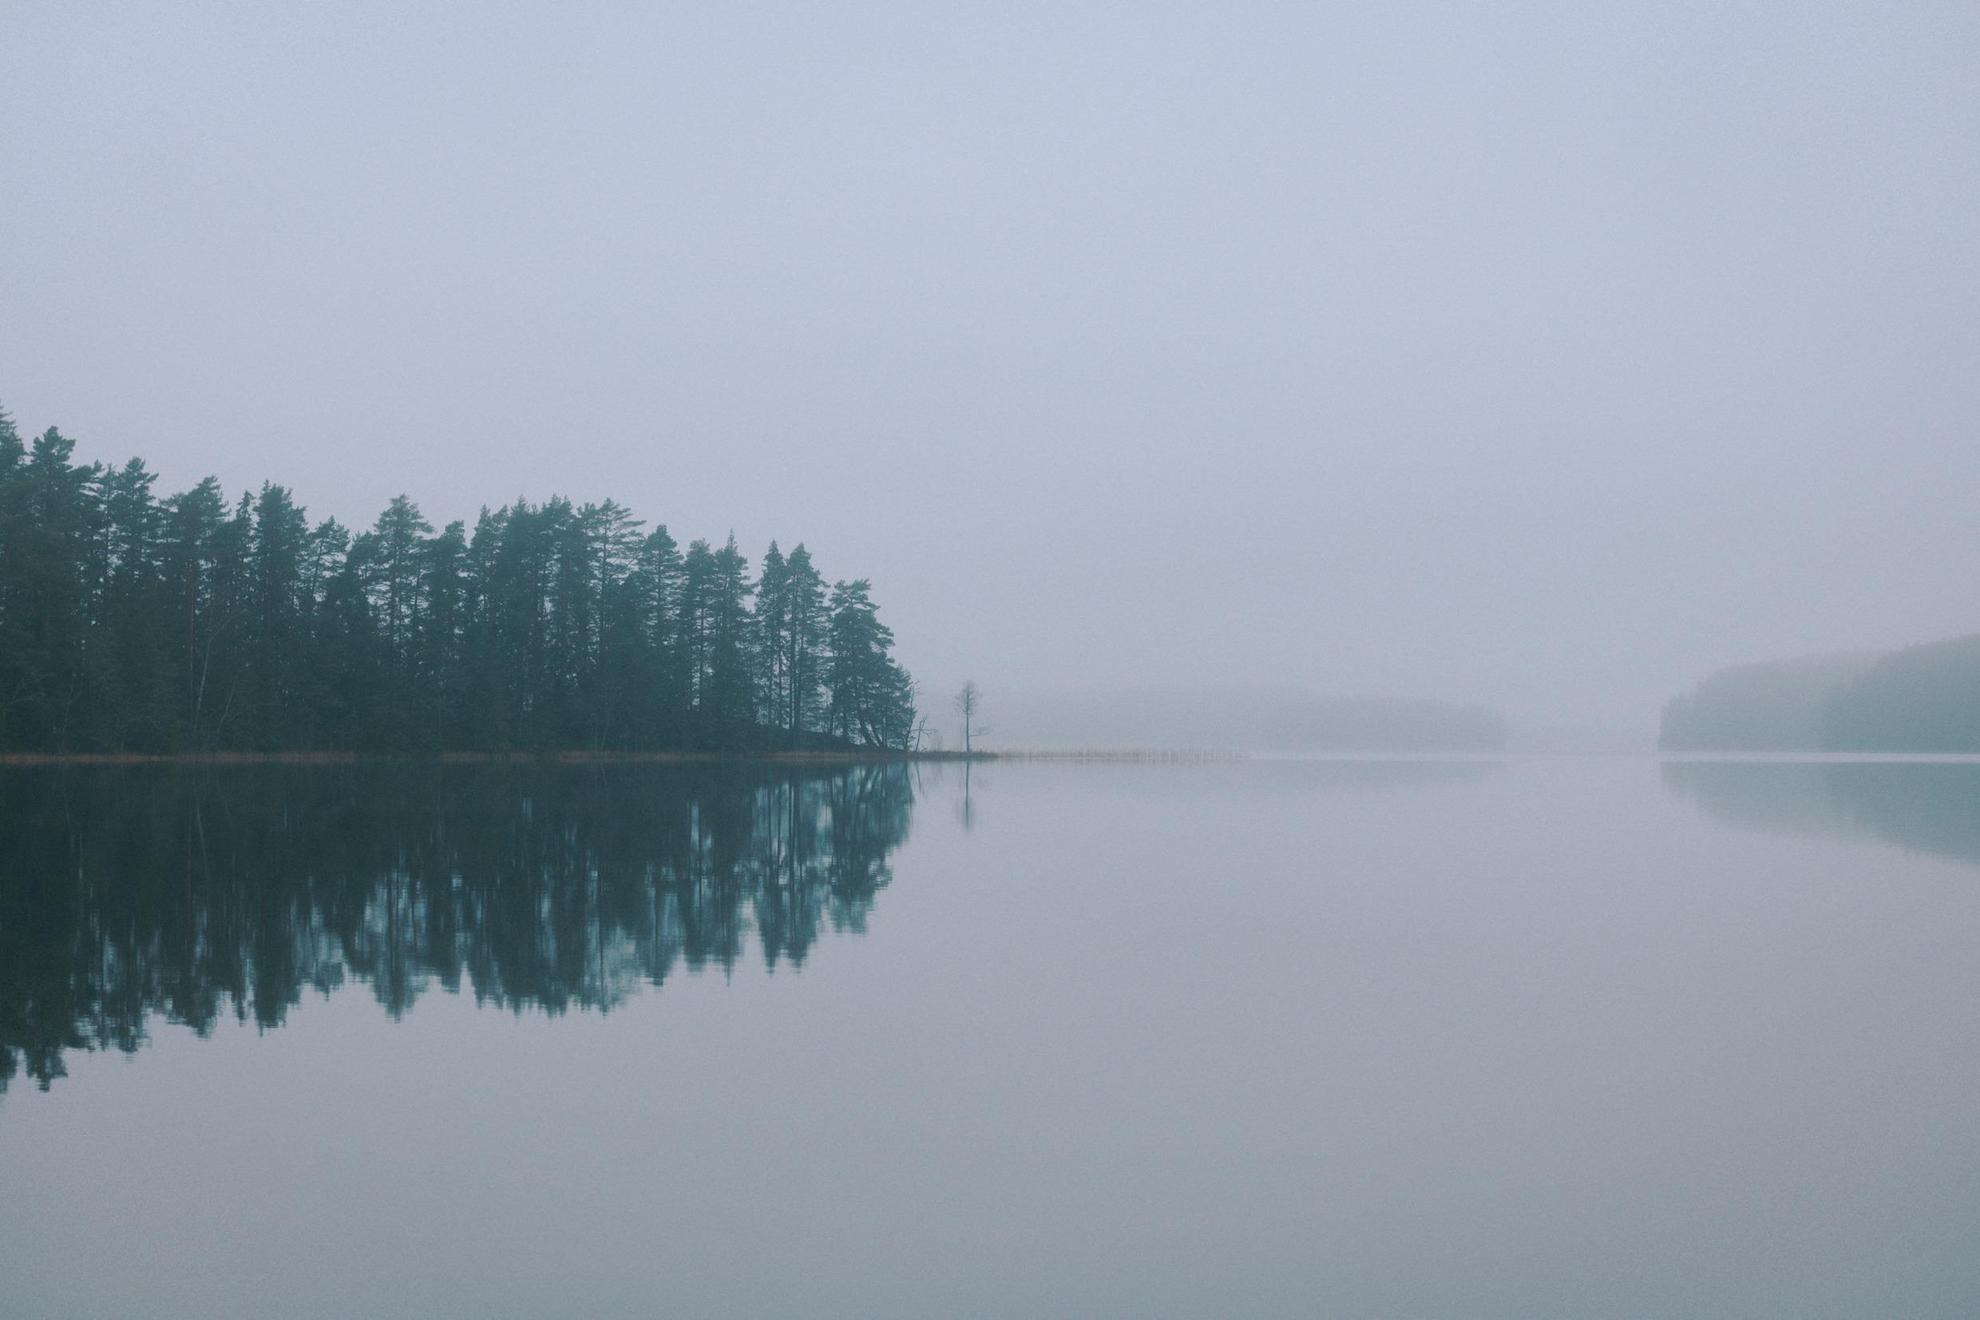 Un lac dans le brouillard. Les arbres verts et le ciel gris se reflètent sur l'eau calme.